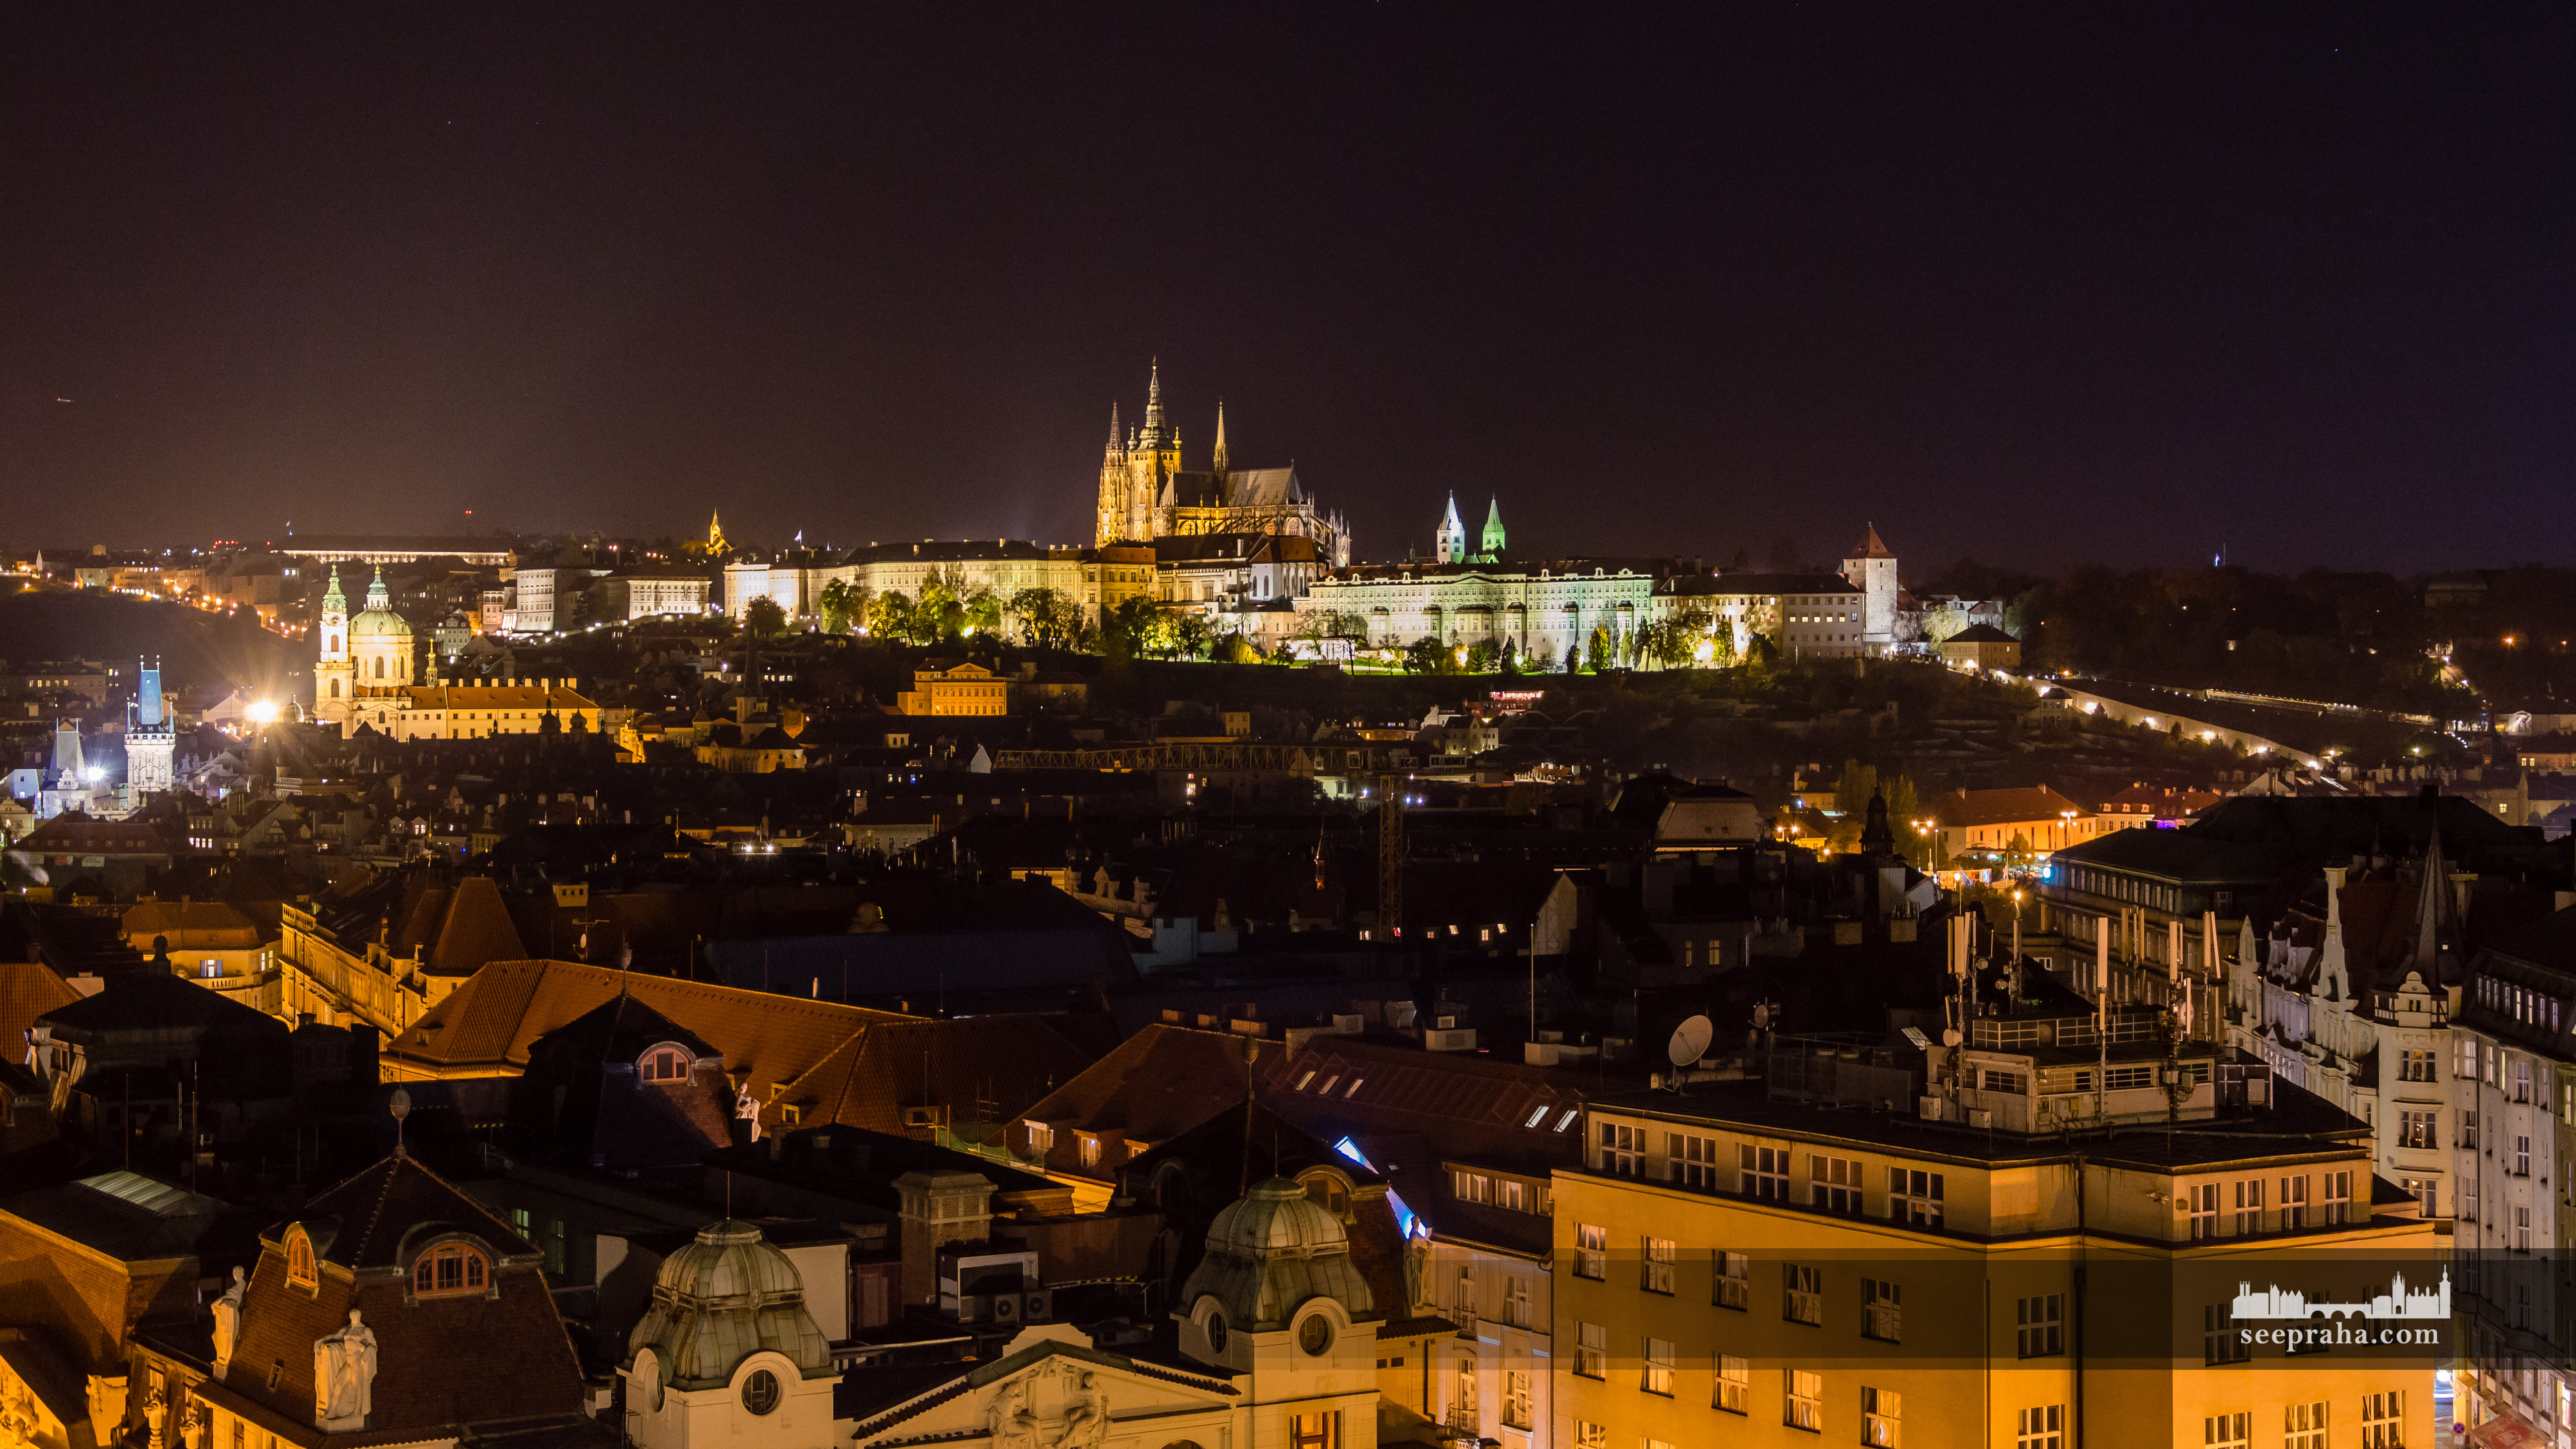 Widok Zamku na Hradczanach nocą, Praga, Czechy